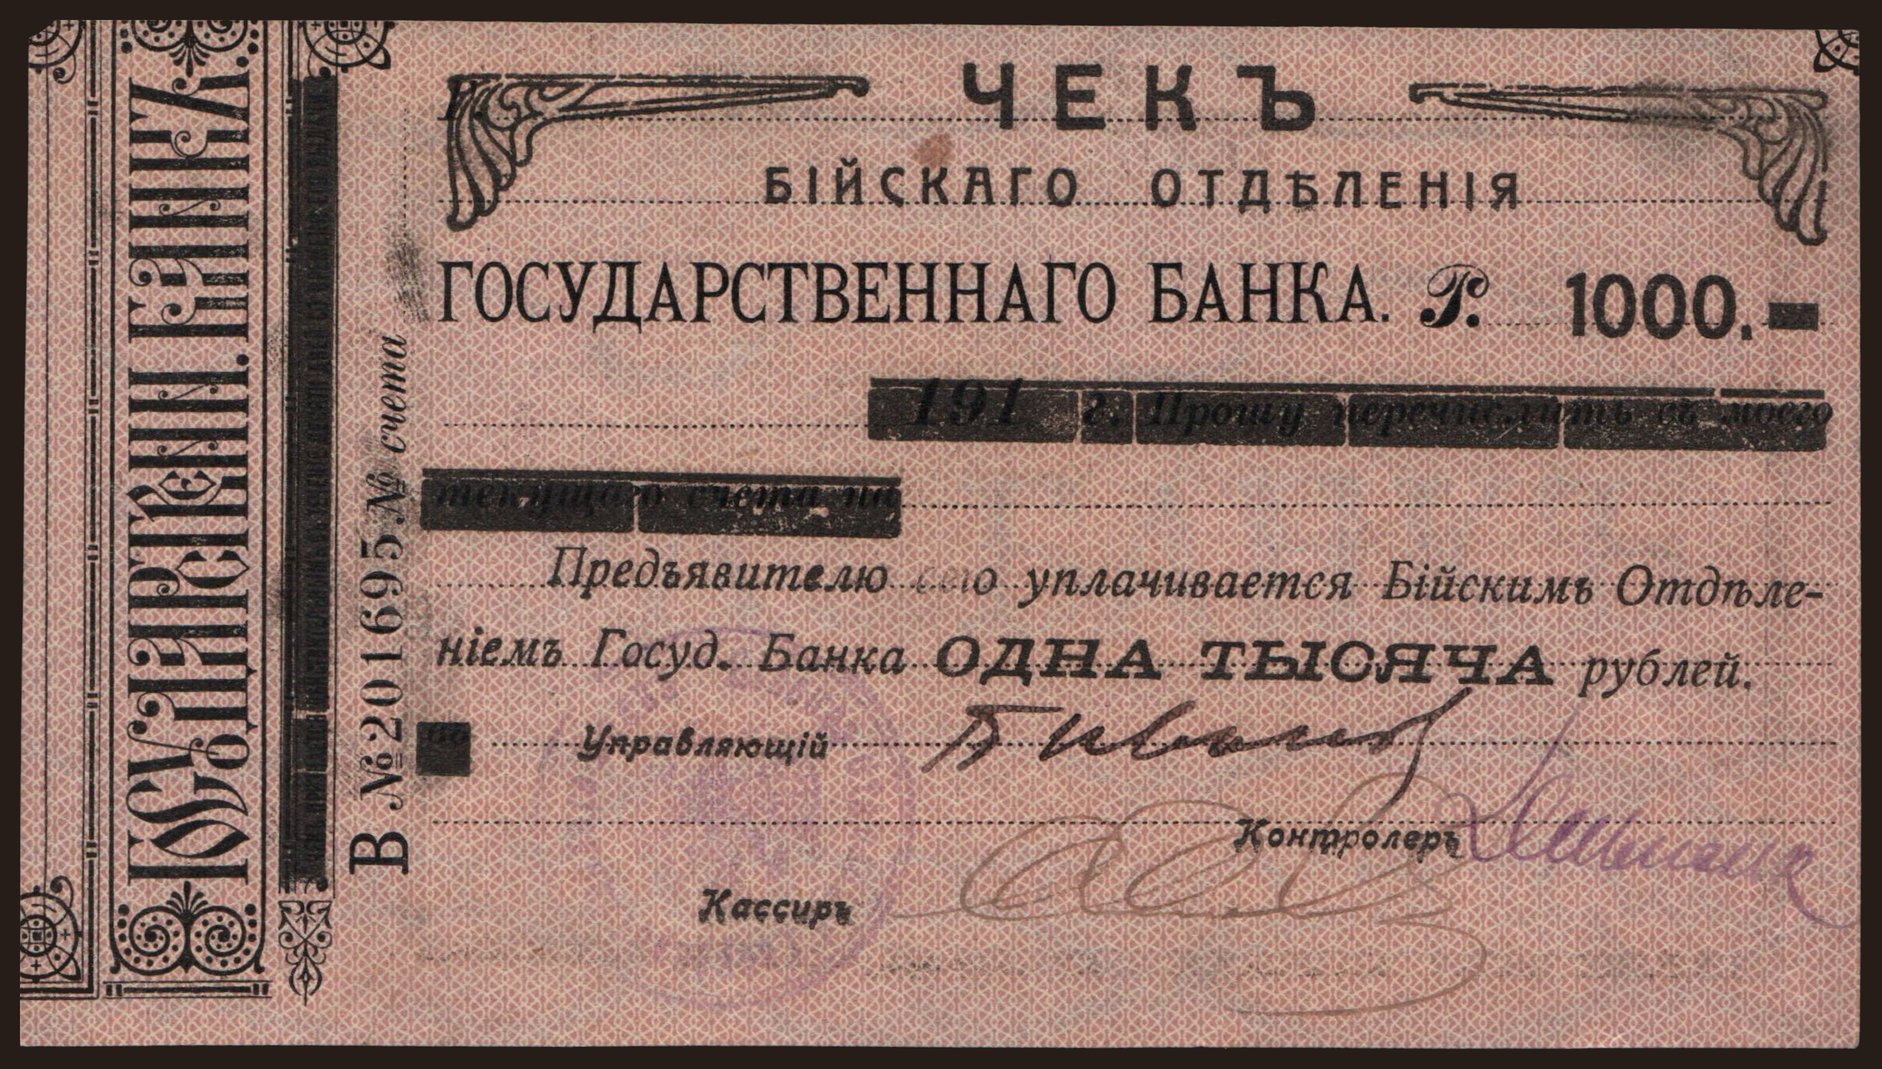 Bijsk, 1000 rubel, 1920